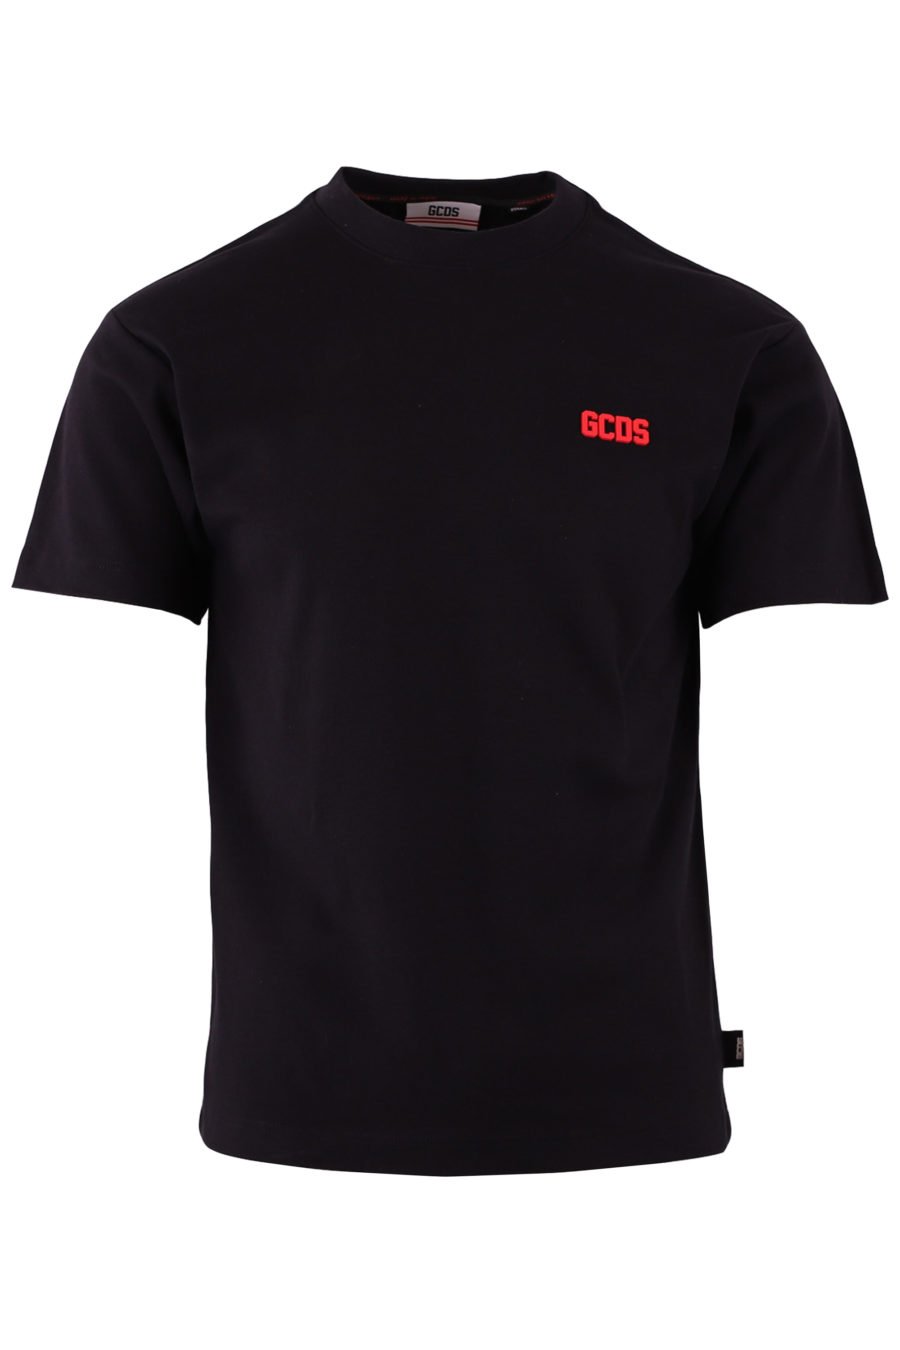 Camiseta negra con logo pequeño rojo - 543367961929d01cca0f1a67b35b61b1de57be27